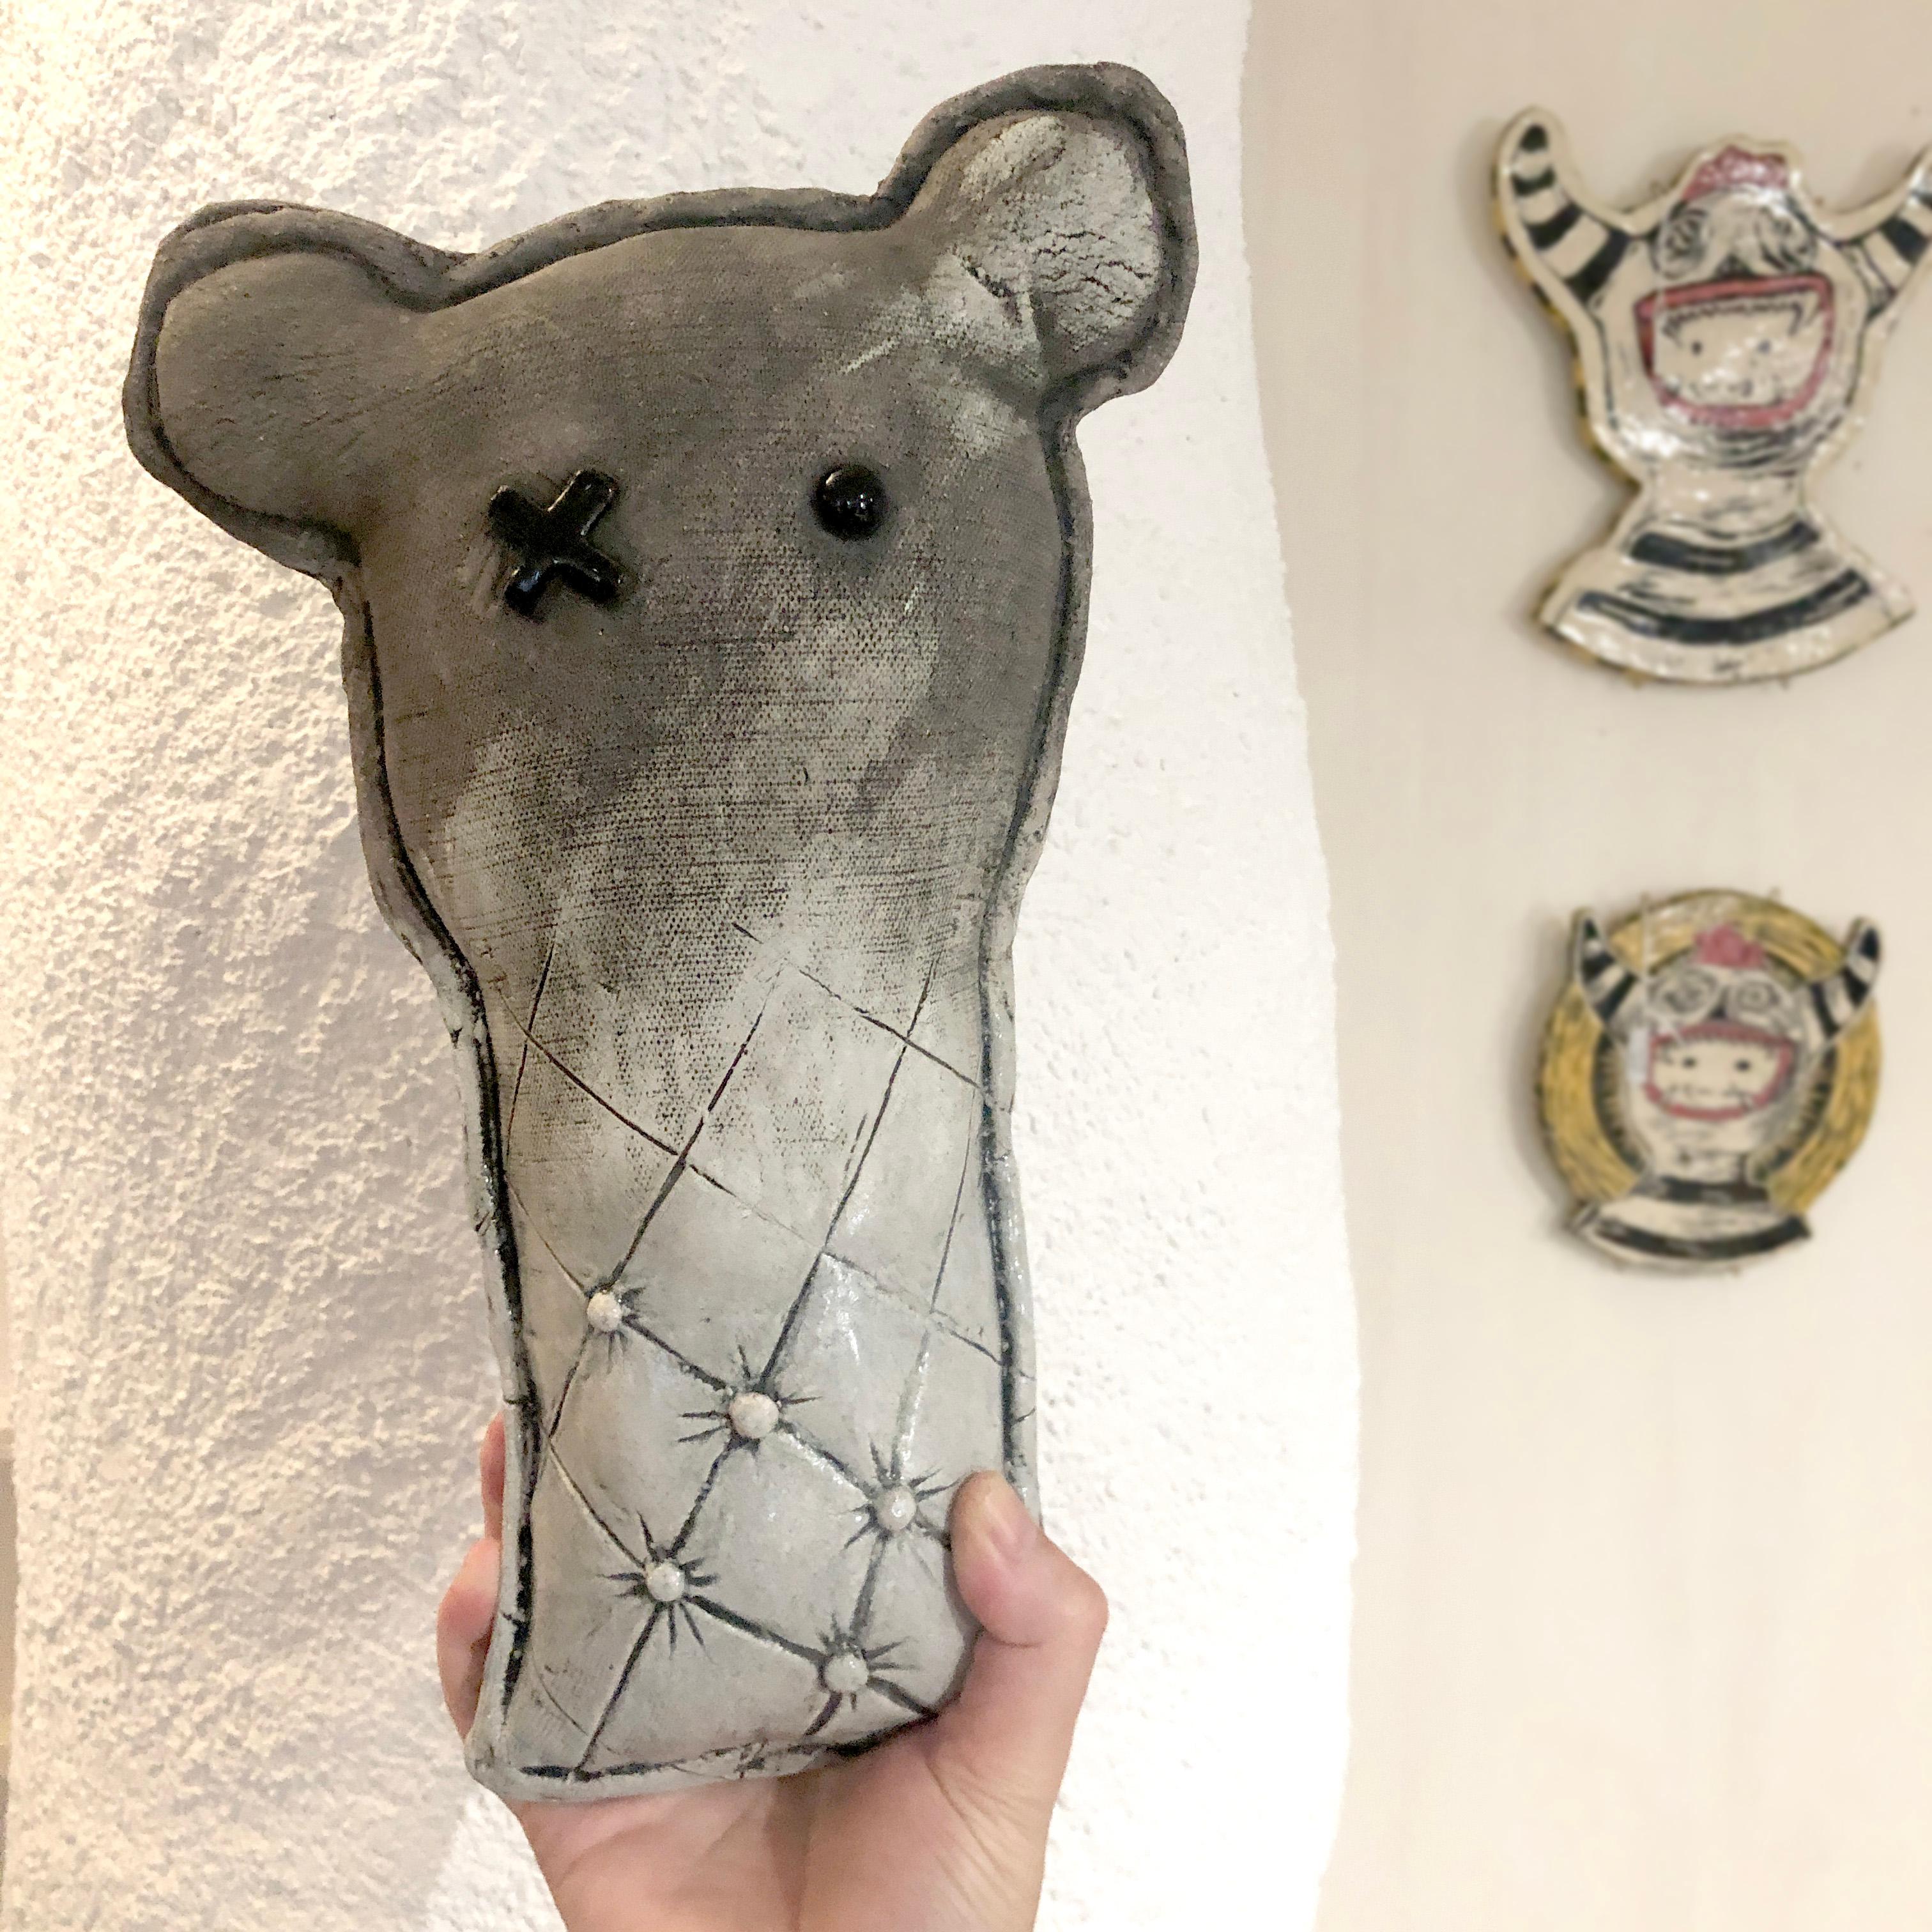 Wir präsentieren Théodor Gerald I oder einfach Teddy G, einen weiteren kuscheligen Keramik-Teddybären in schickem Grau und Weiß. Passt perfekt in ein modernes Interieur. 

Die Kombination von zeitgenössischer Ästhetik mit einem Hauch von Rebellion